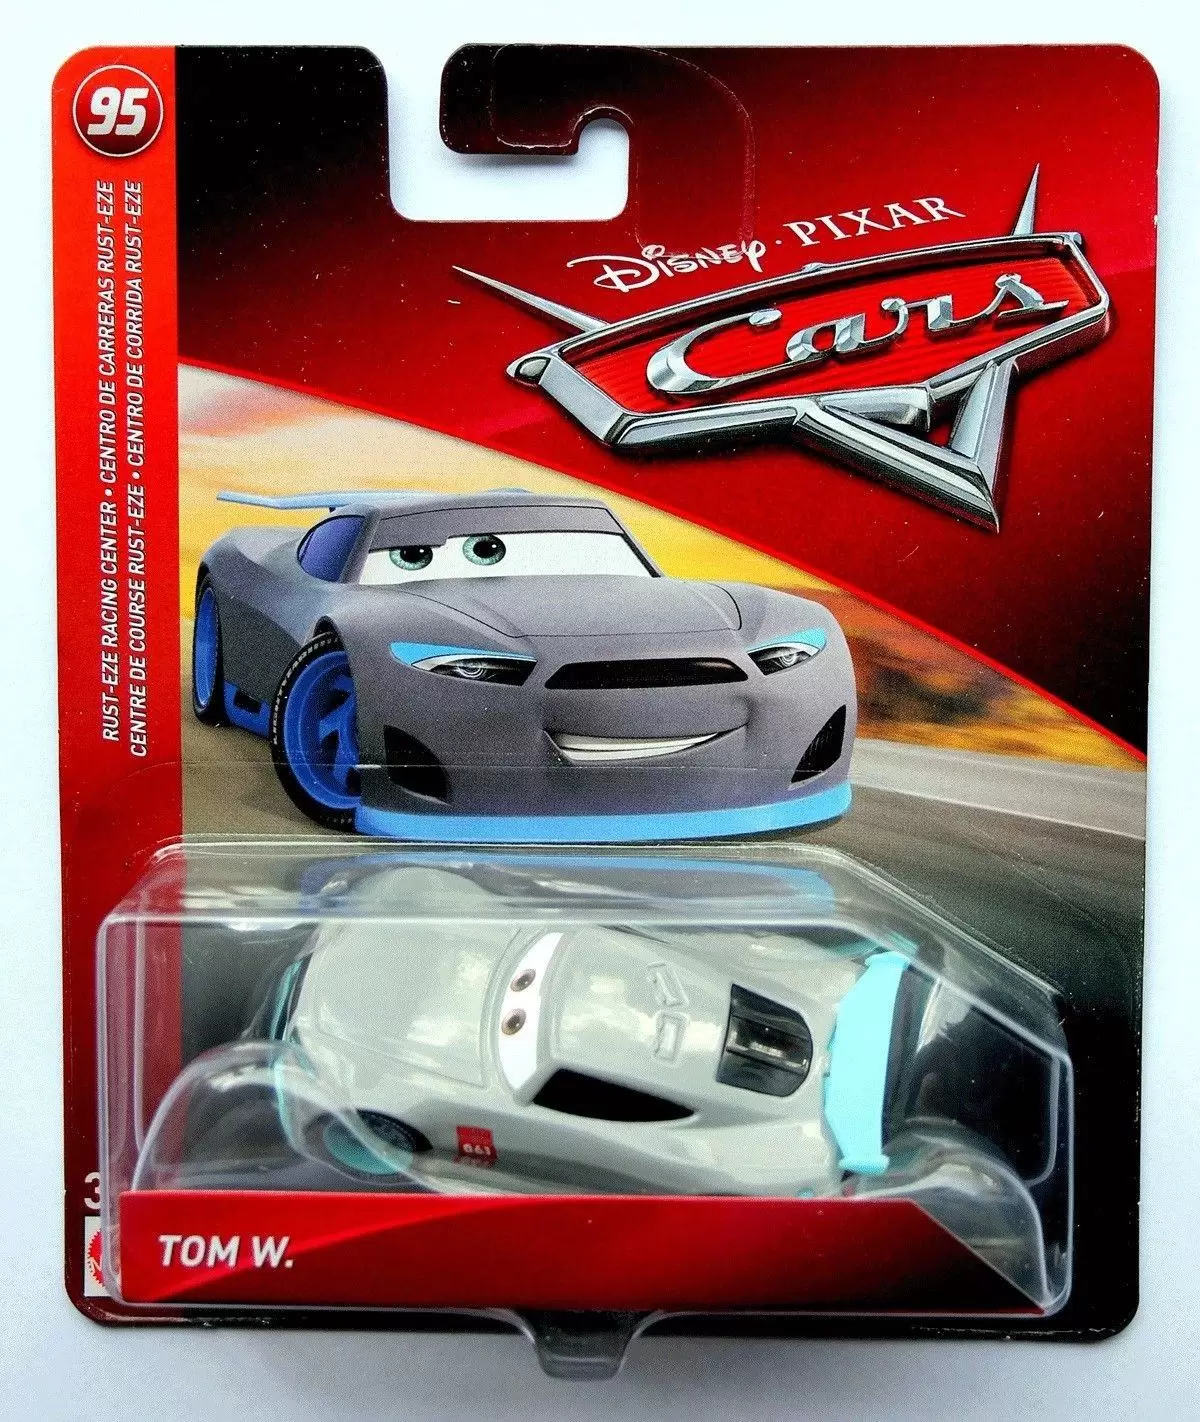 Cars 3 models - Tom W